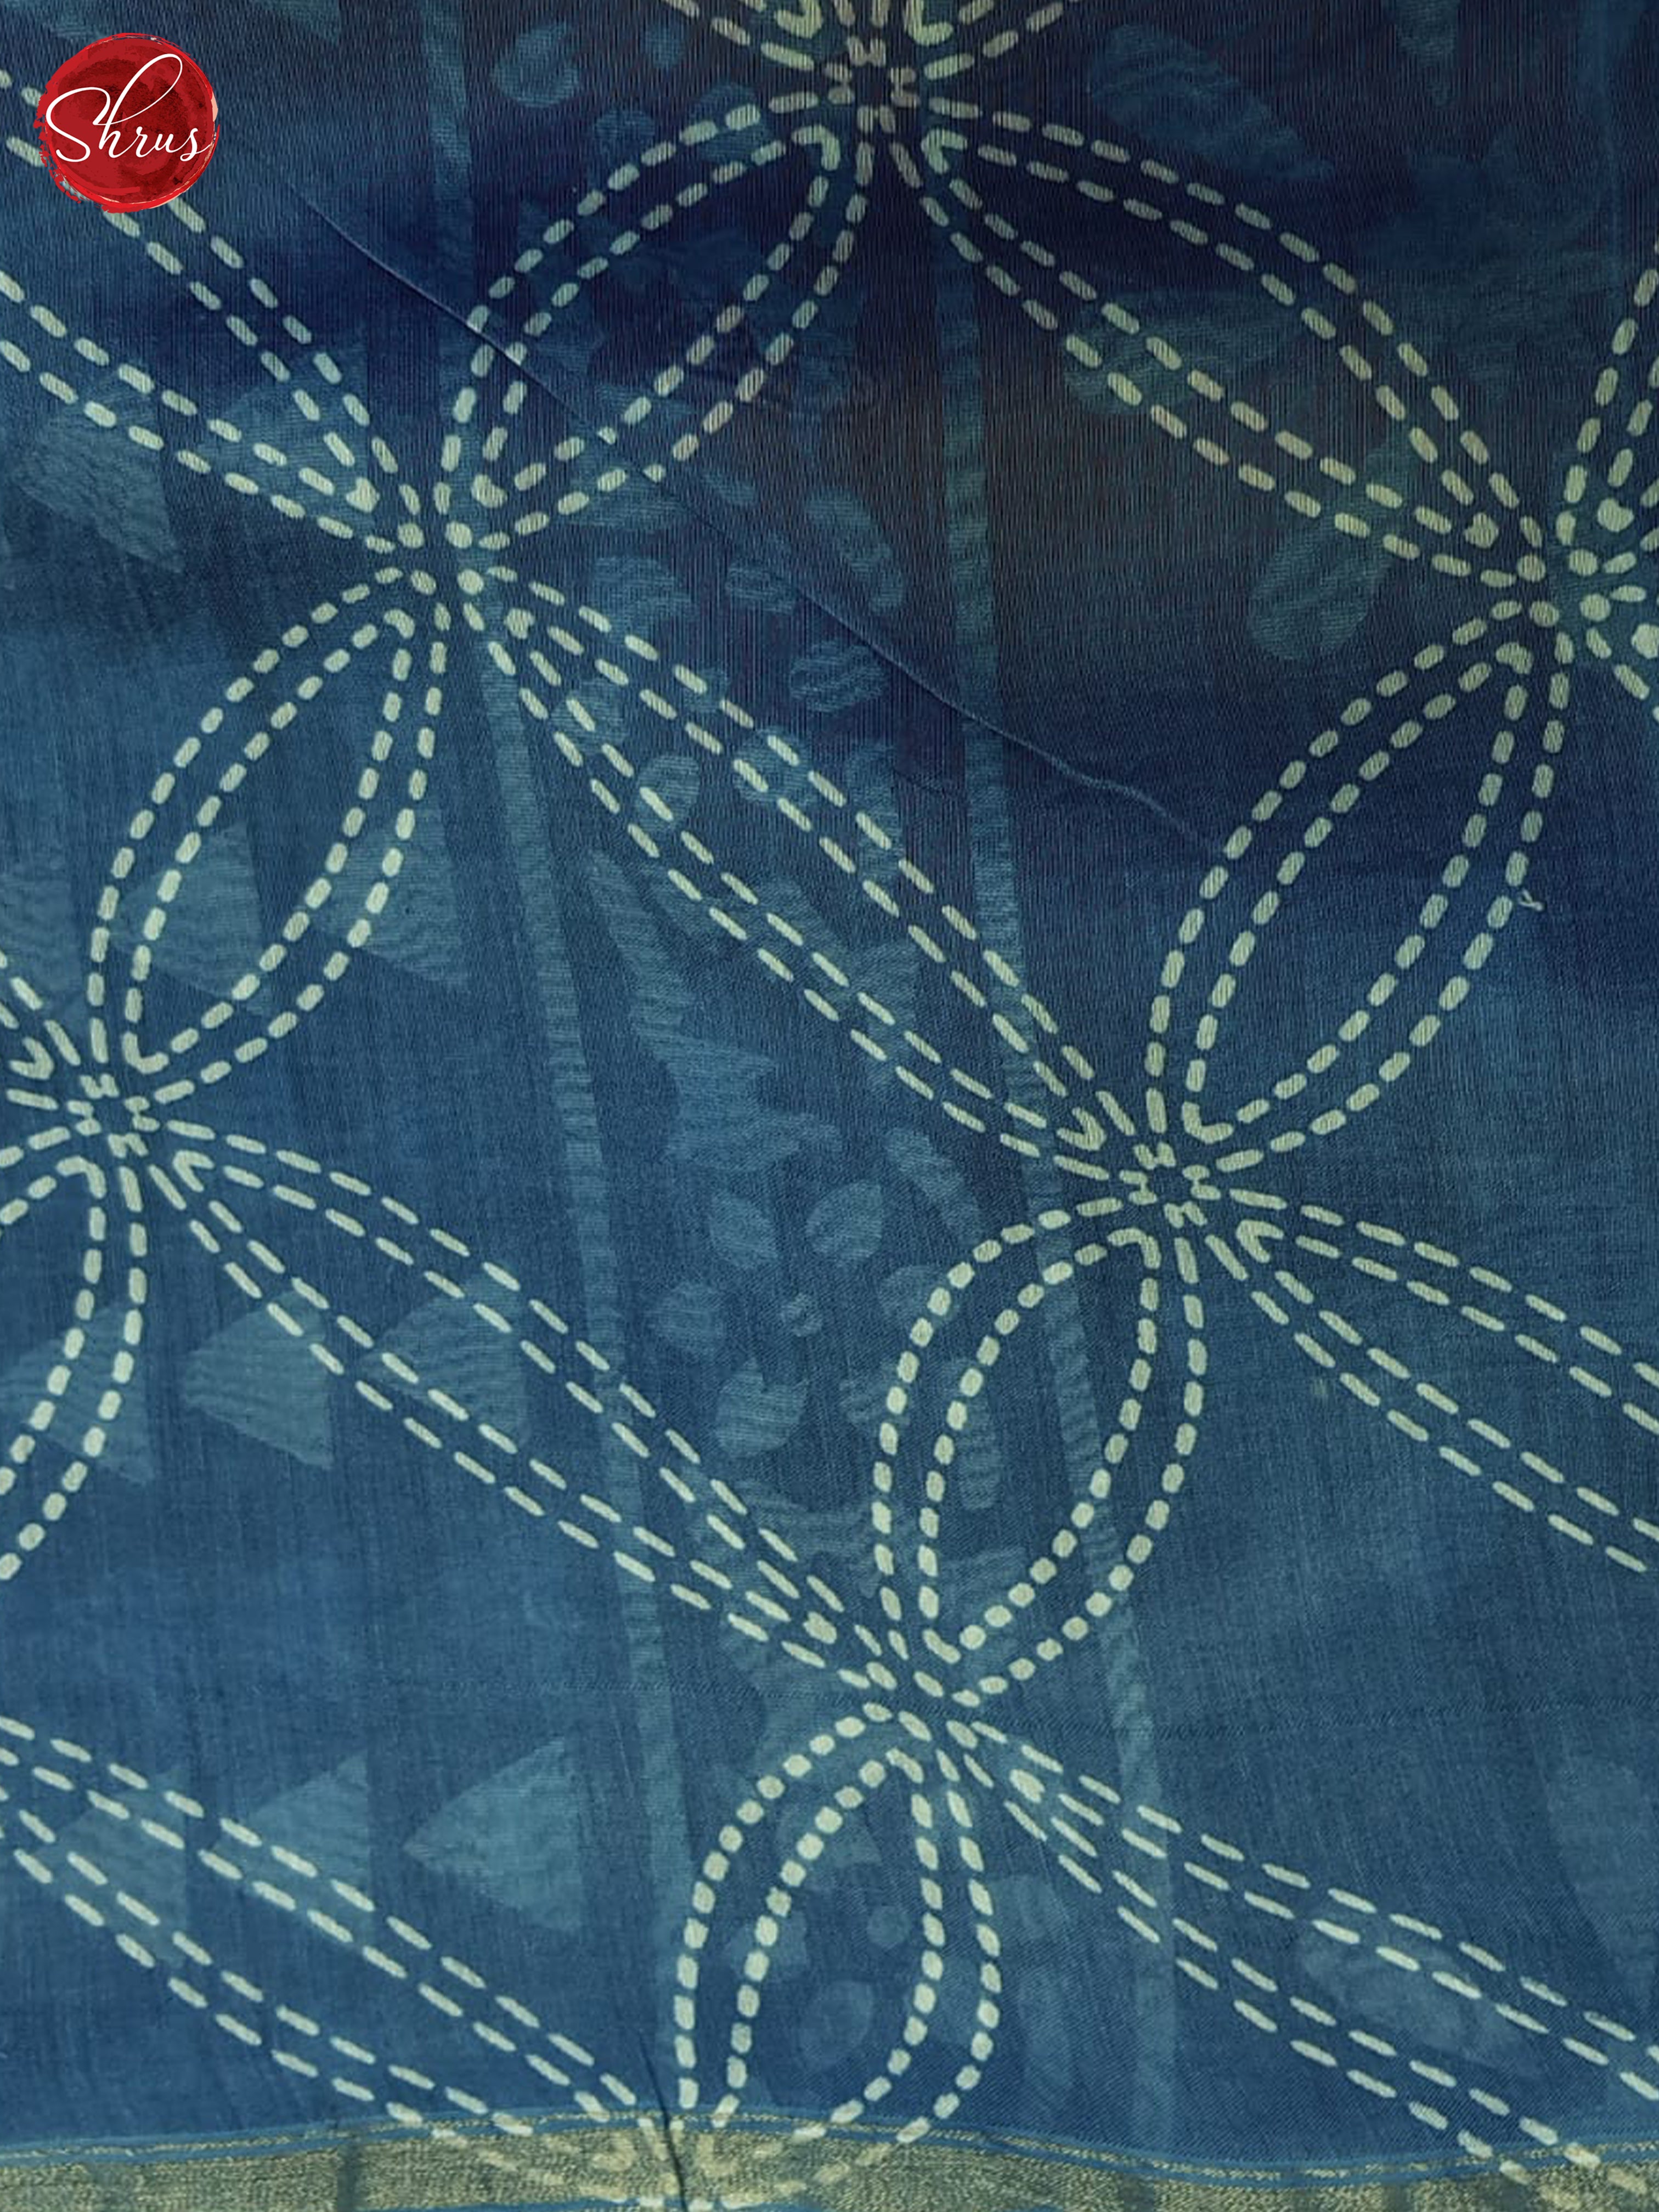 Blue(single tone)-Maheshwari Silk Cotton Saree - Shop on ShrusEternity.com